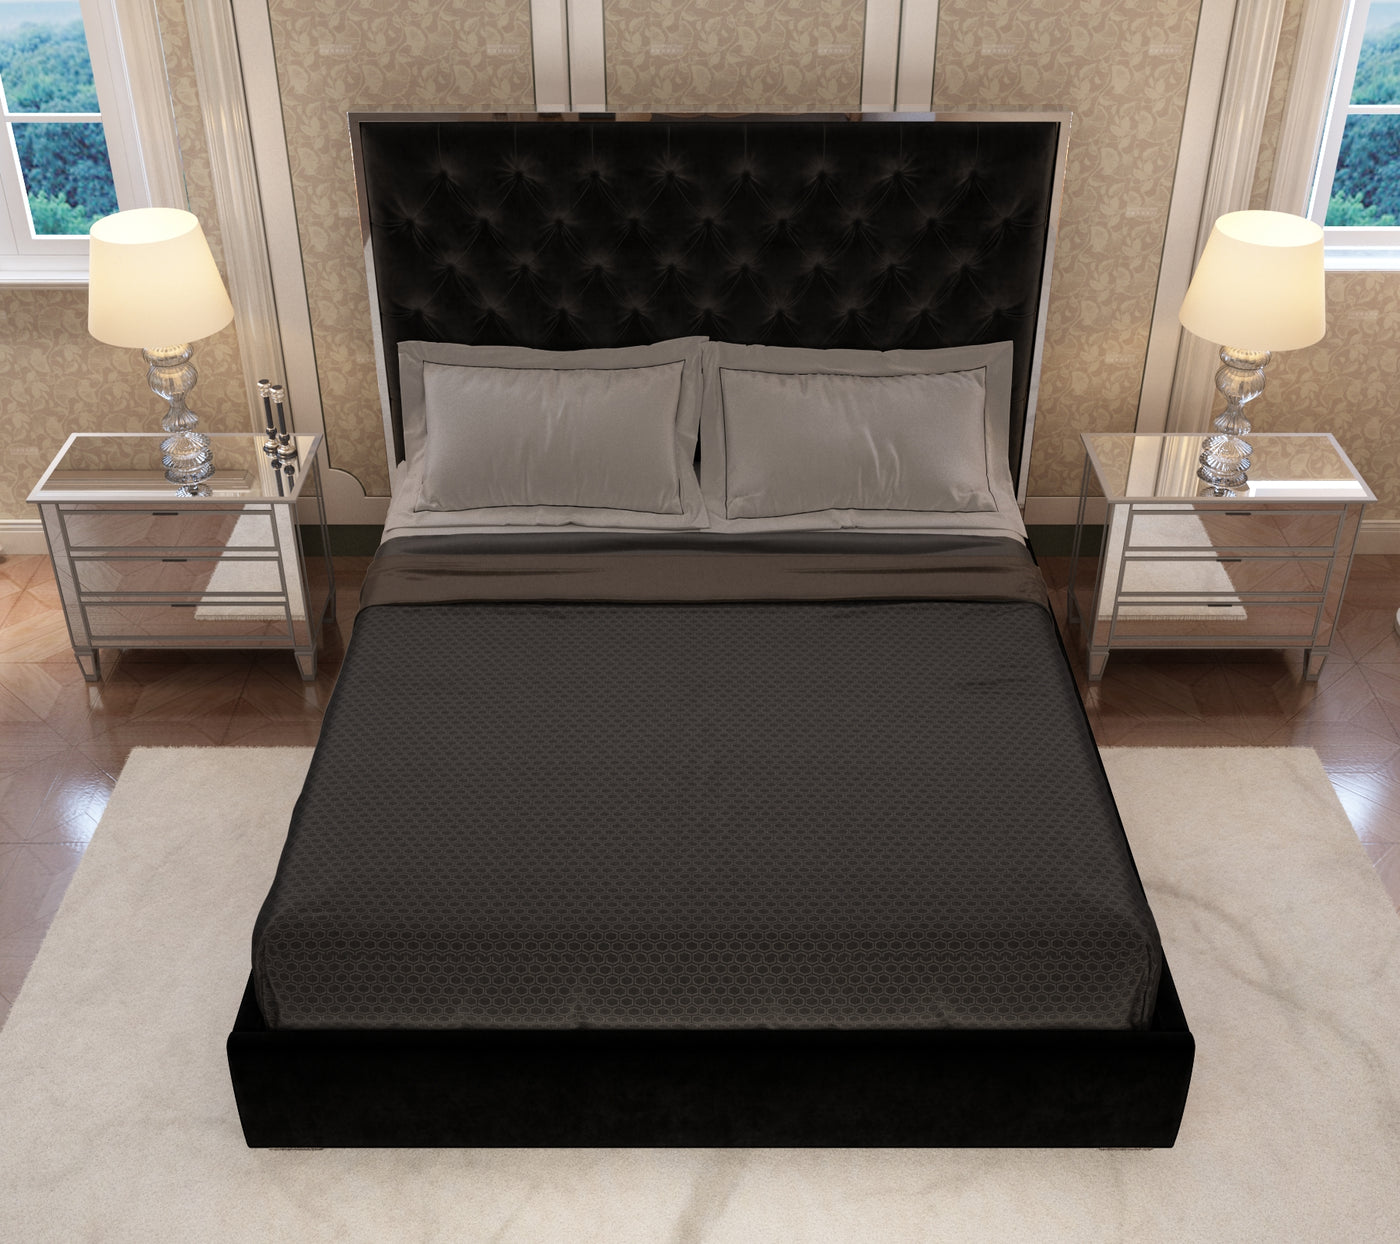 Queen Bed frame- Furniture valley Beds 505764  Beds & Bed Frames (505764)  Fv Australia 